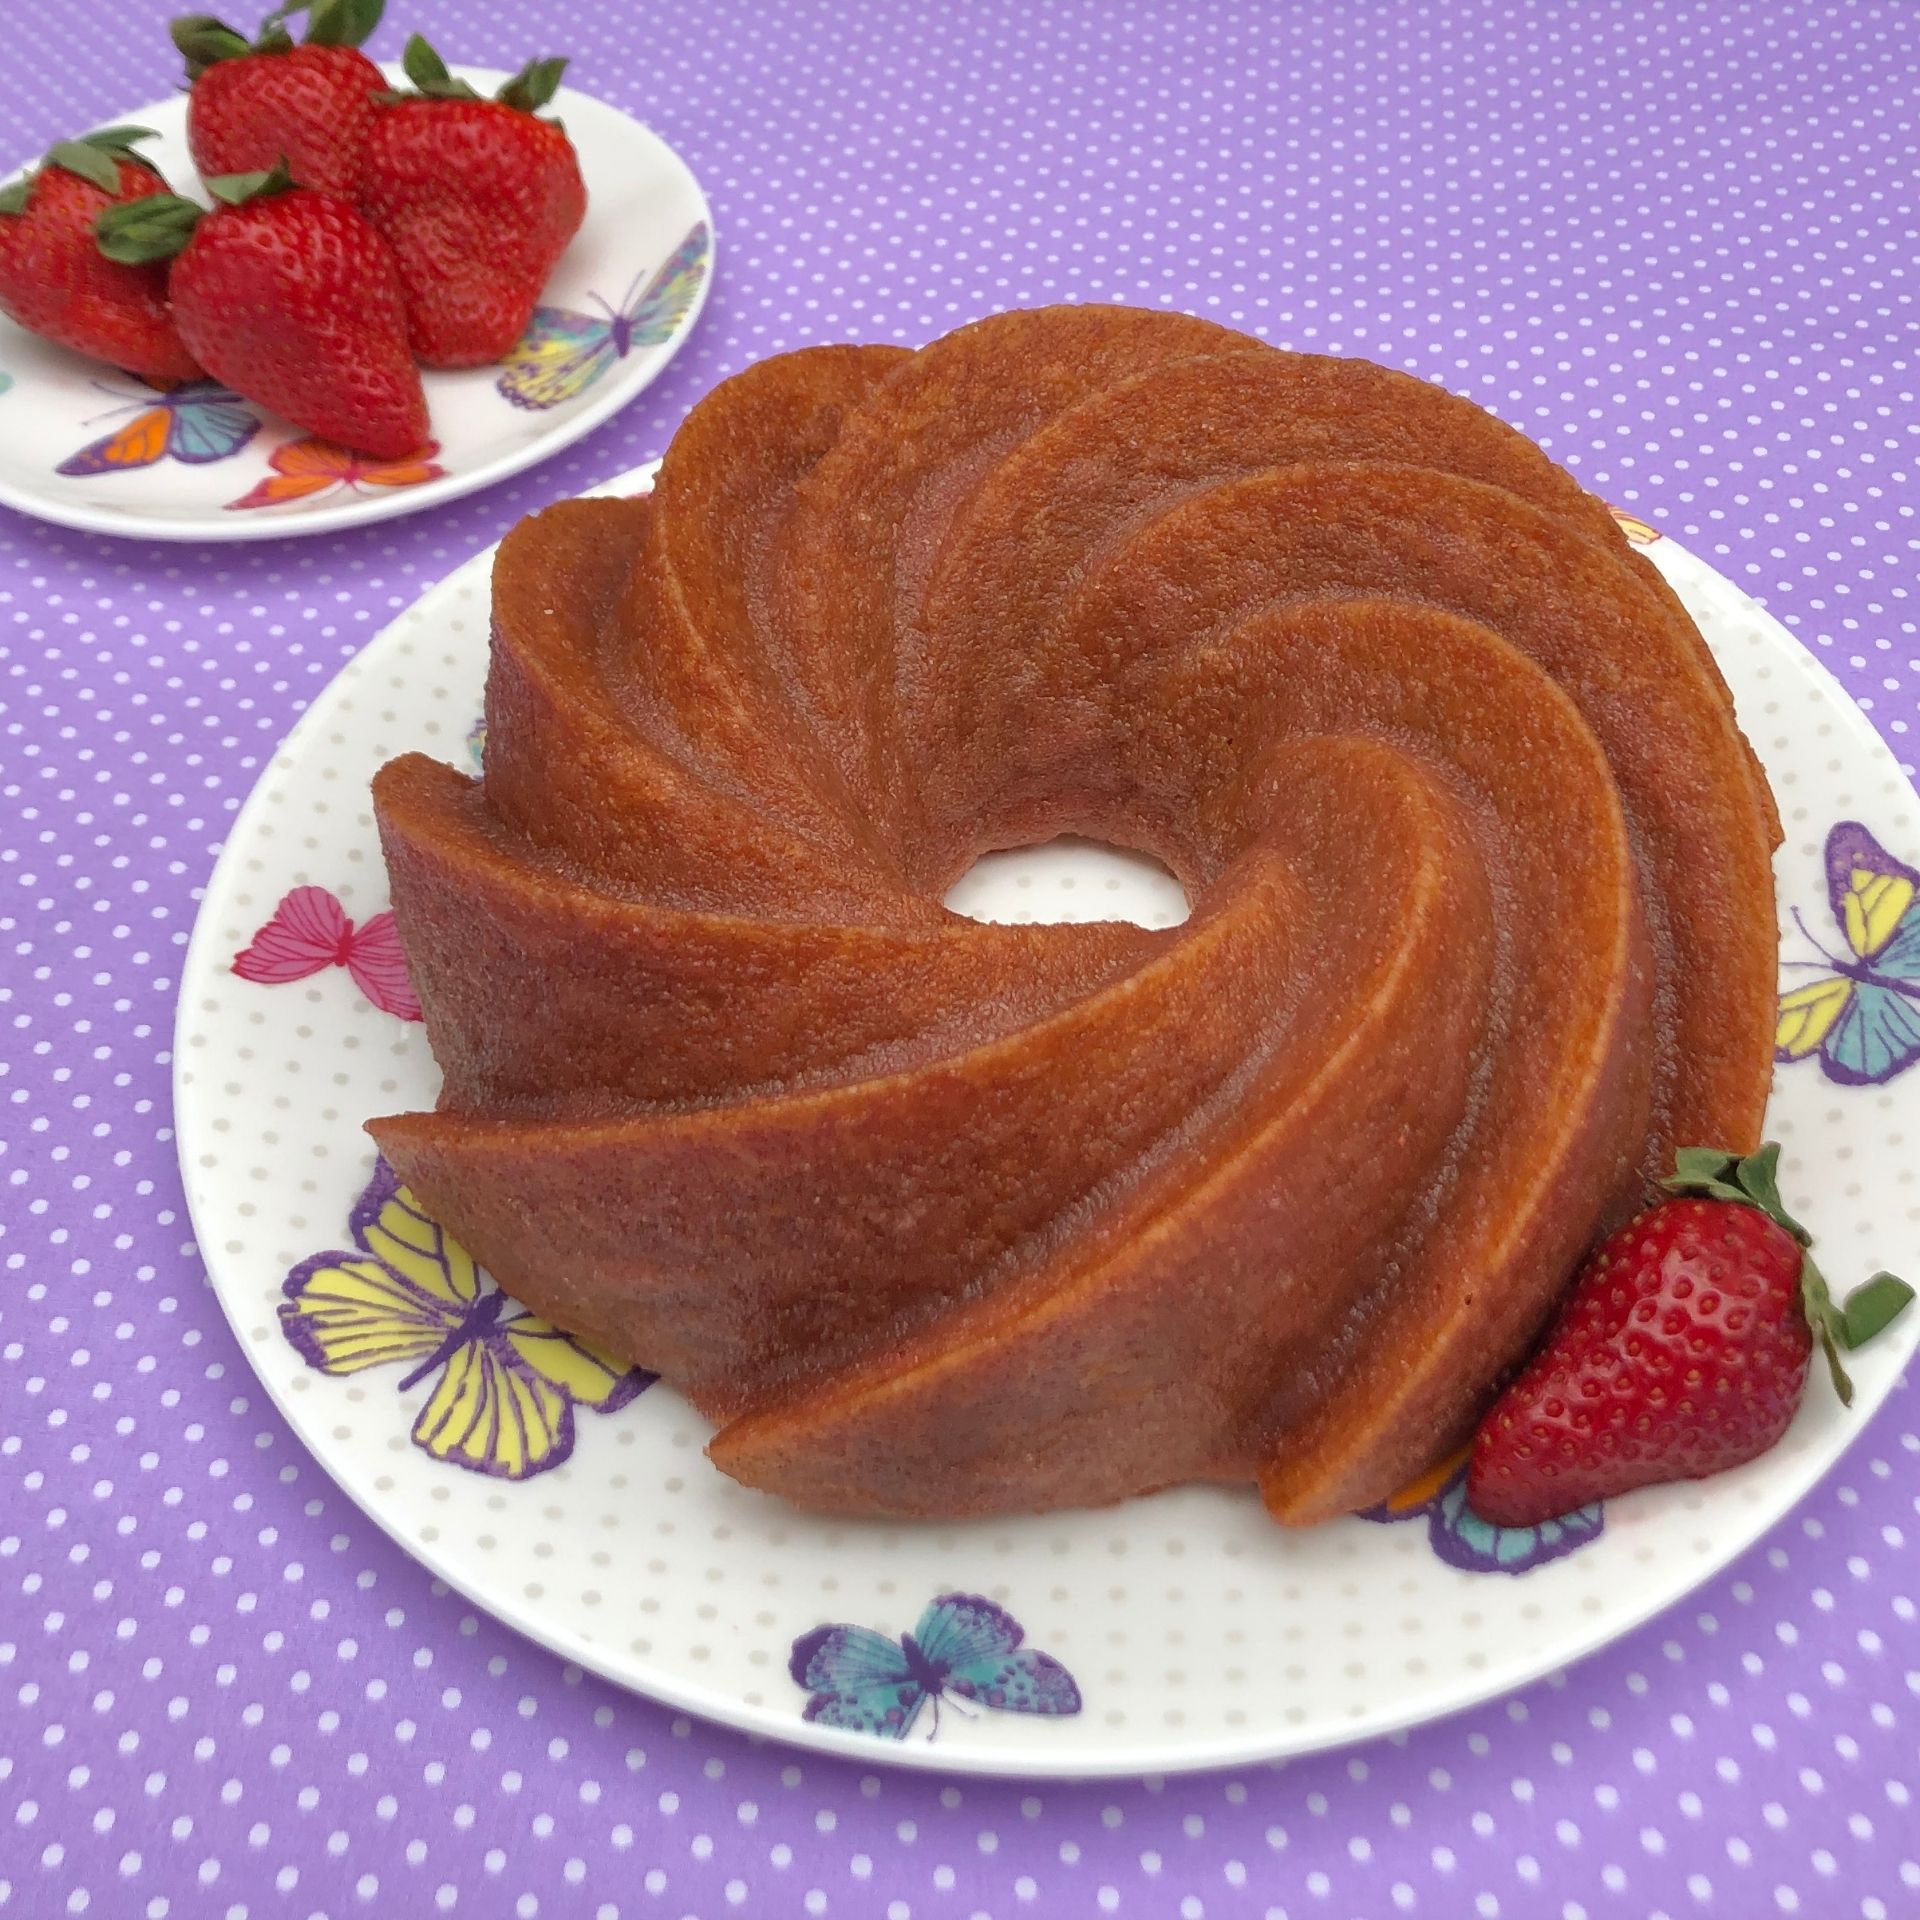 https://beths-bakes.com/wp-content/uploads/2021/04/Beths-Bakes_Strawberry-Swirl-Cake_2.jpg